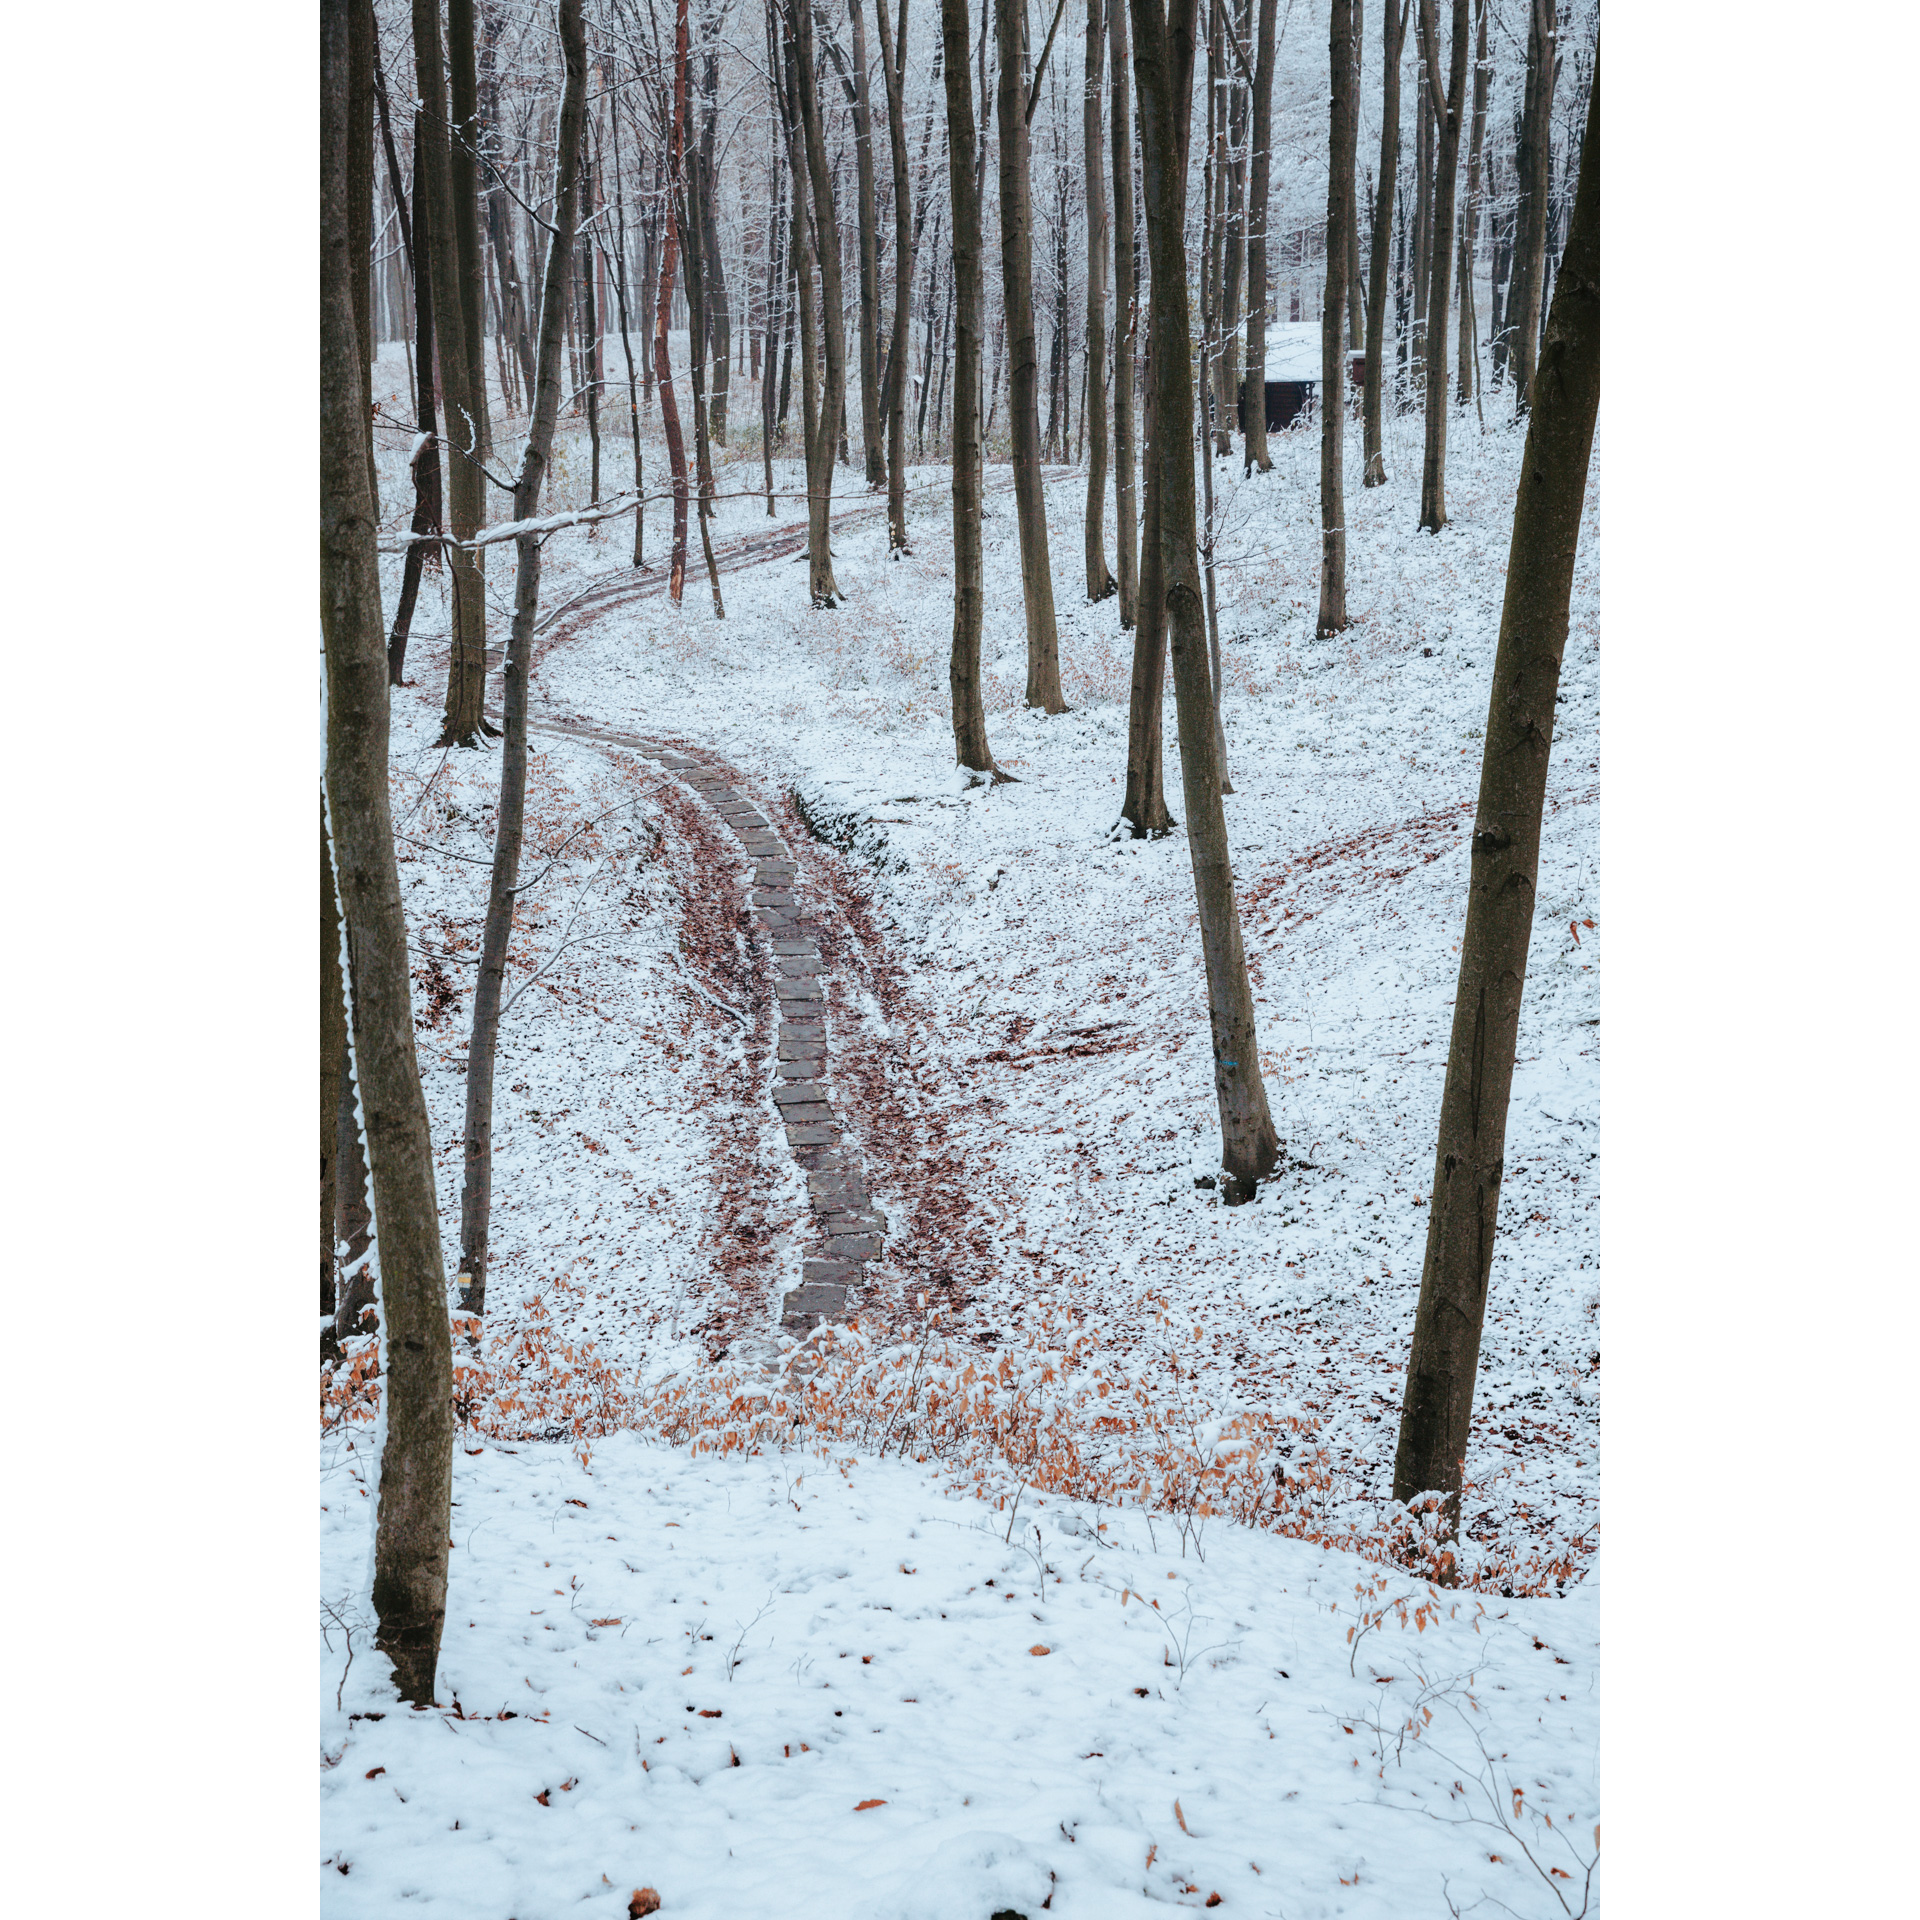 Widok z góry na zaśnieżoną leśną ścieżkę ułożoną z cementowych płyt wśród wysokich pni drzew